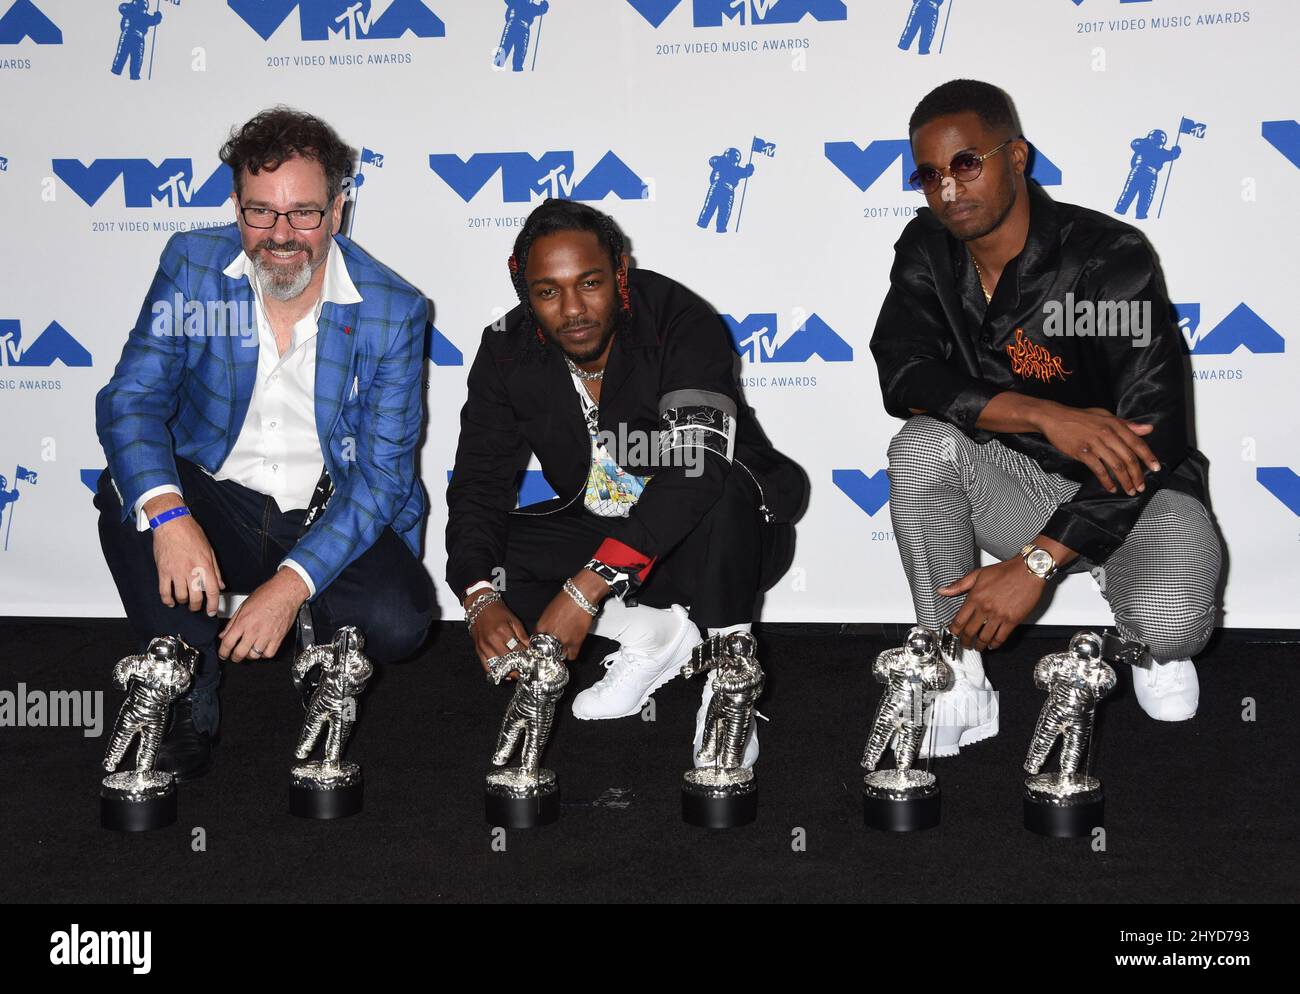 Dave Meyers, Kendrick Lamar et Dave Free dans la salle de presse des MTV Video Music Awards 2017 qui se tiennent au Forum de Los Angeles, USA Banque D'Images